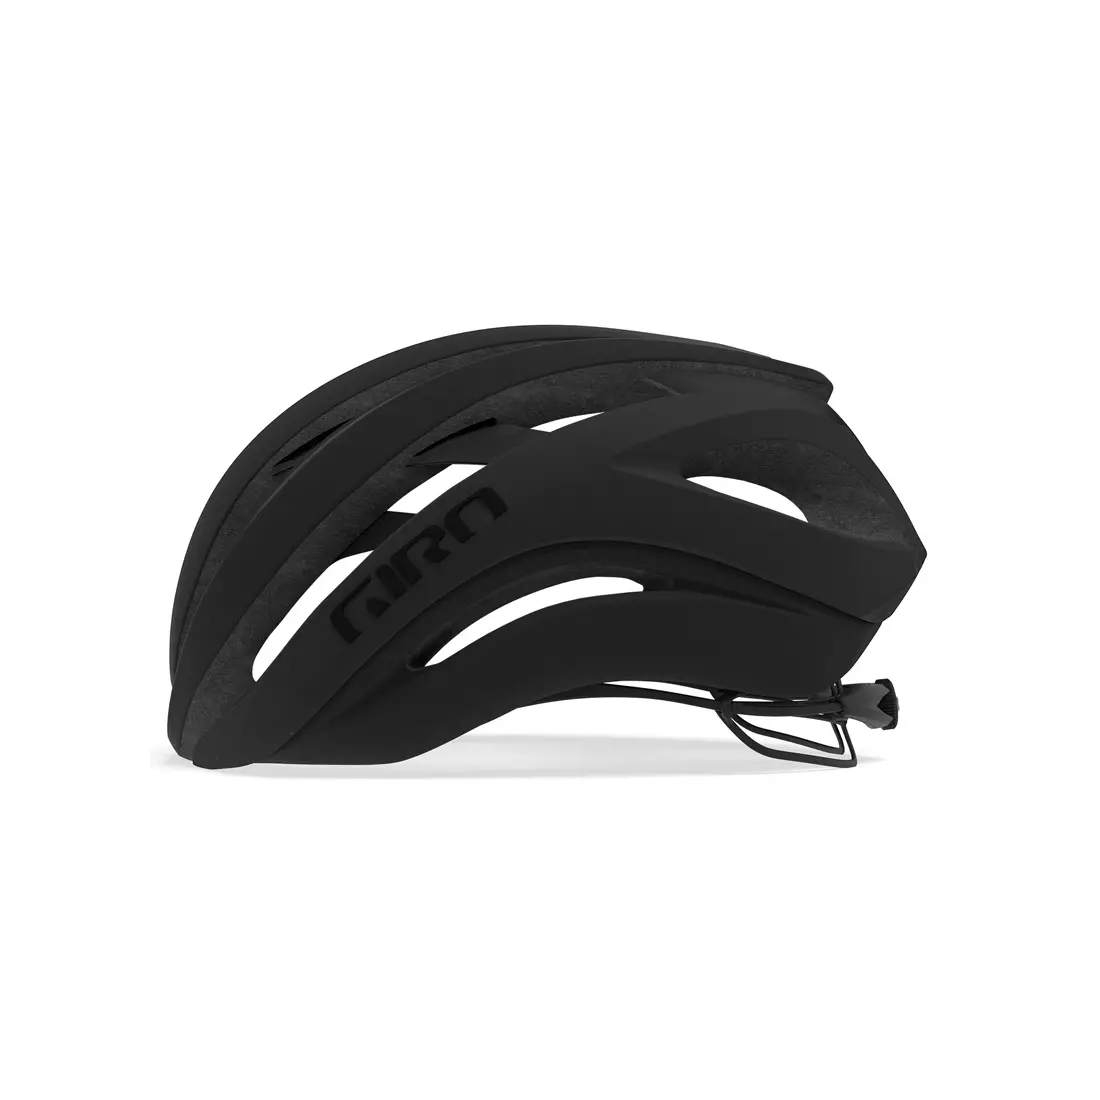 GIRO road bike helmet aether spherical mips matte black GR-7099477